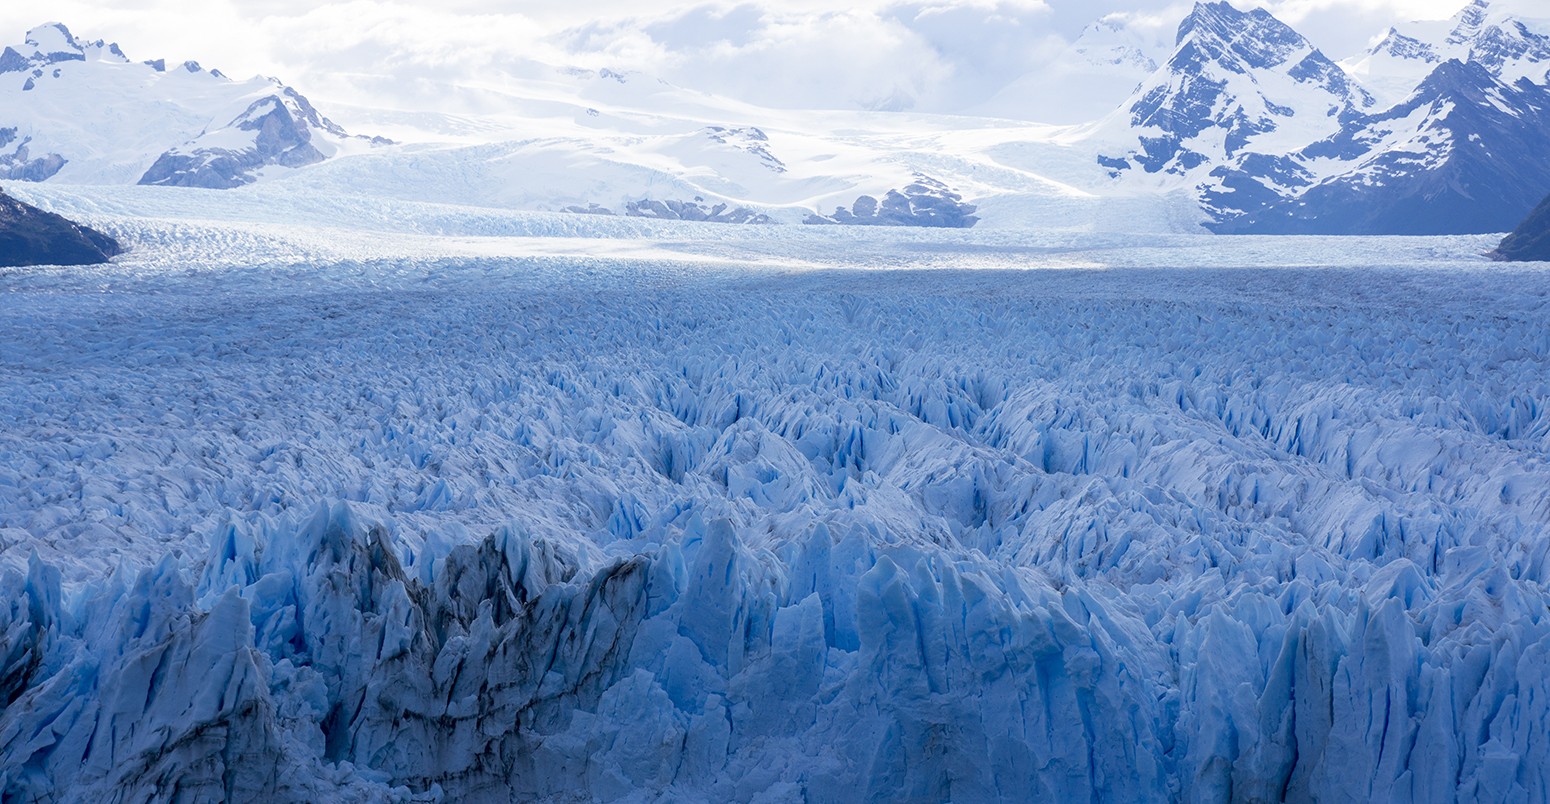 冰川国家公园,联合国教科文组织的世界遗产地,阿根廷